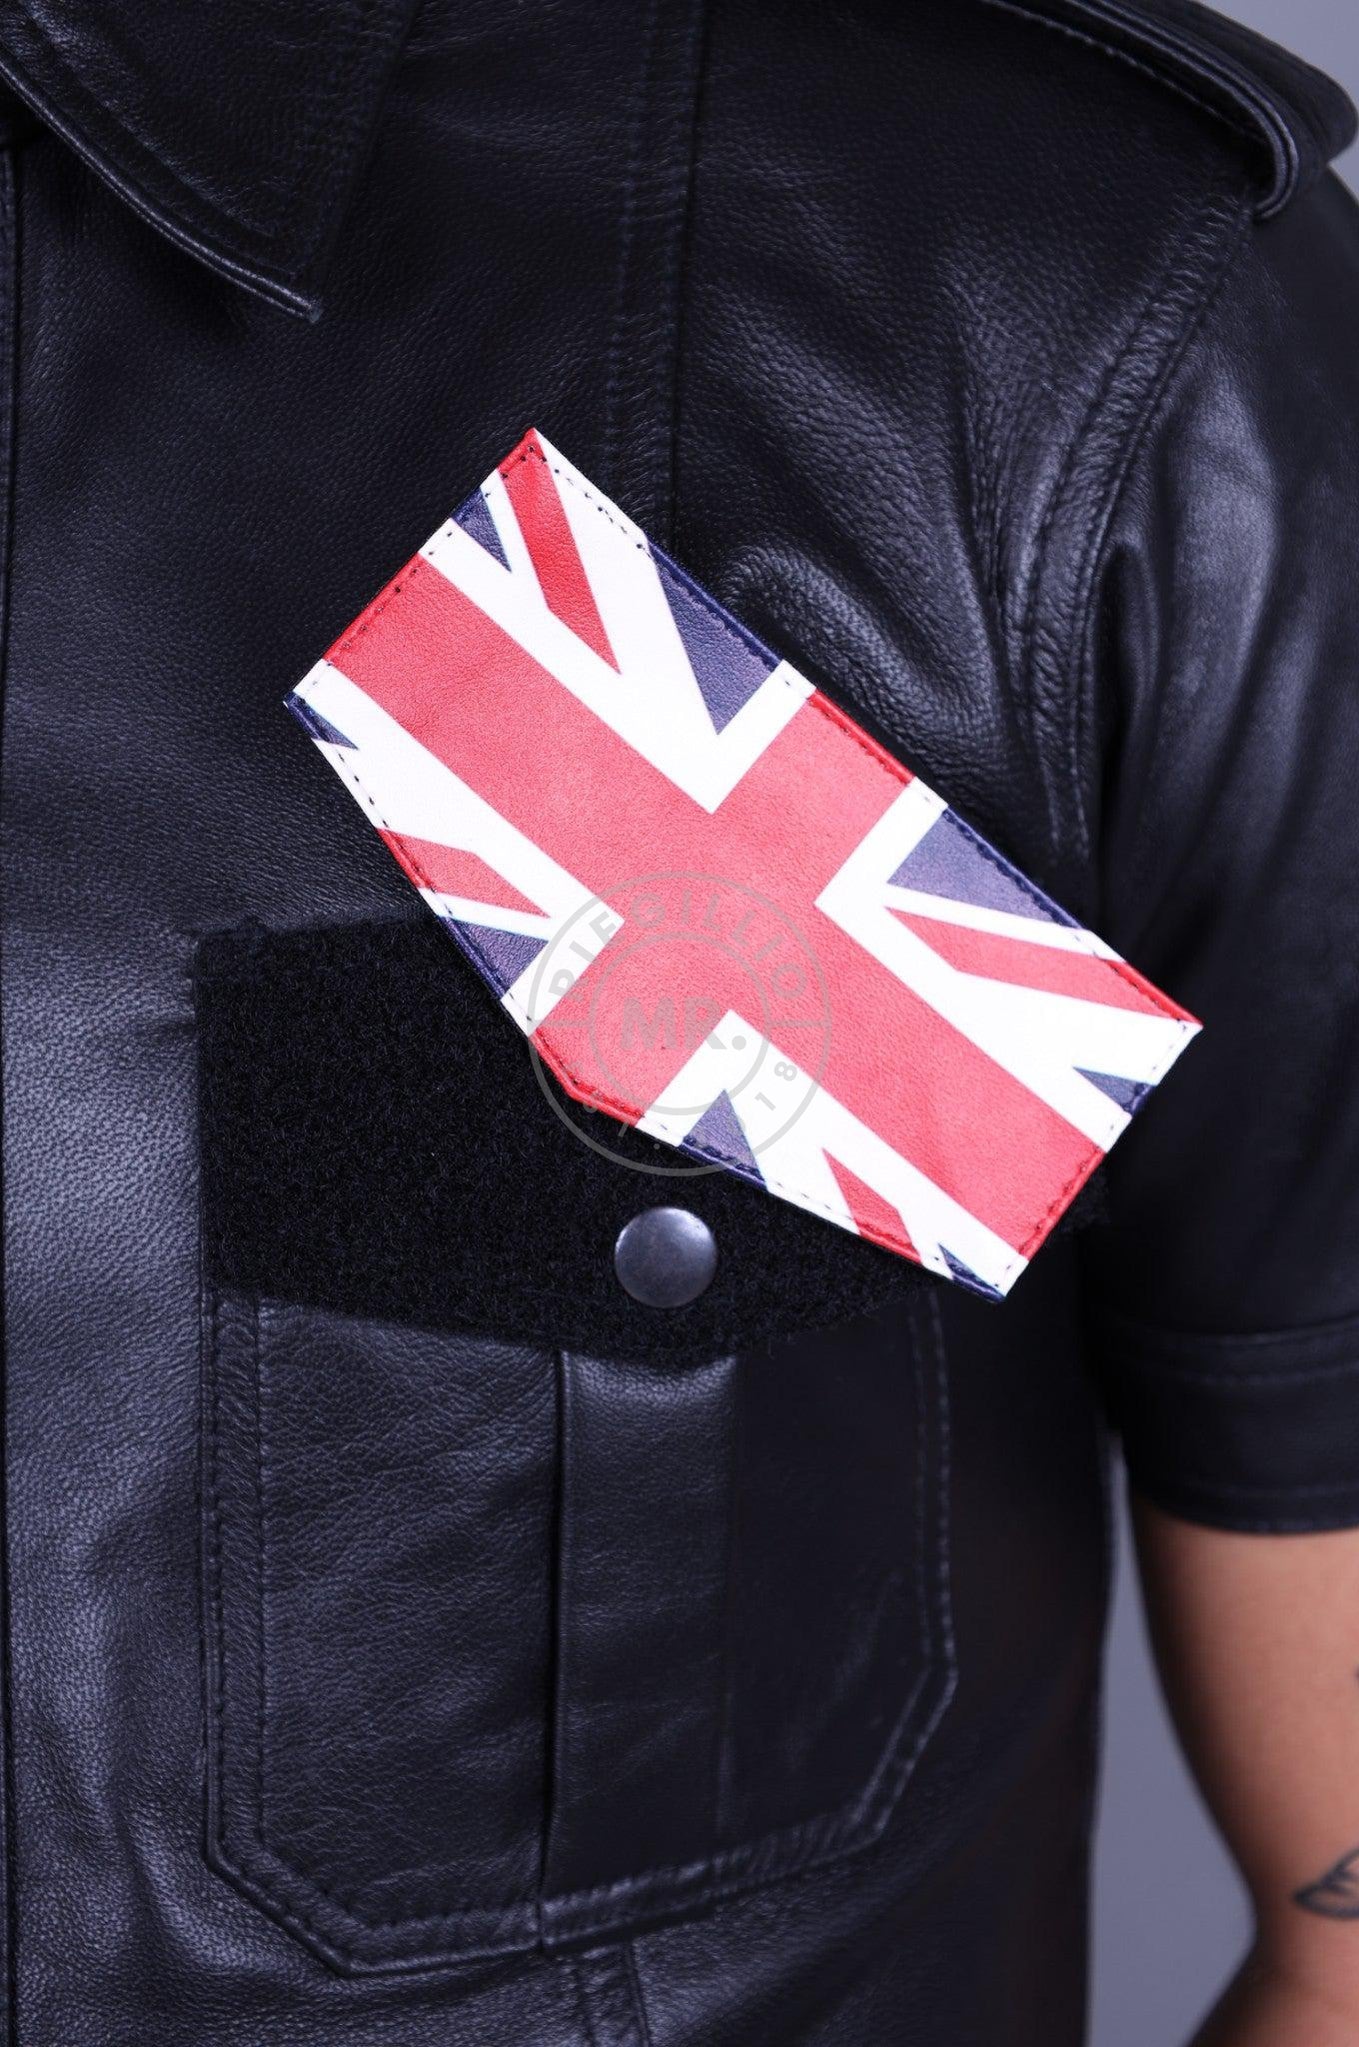 Velcro Patch - UK Flag at MR. Riegillio